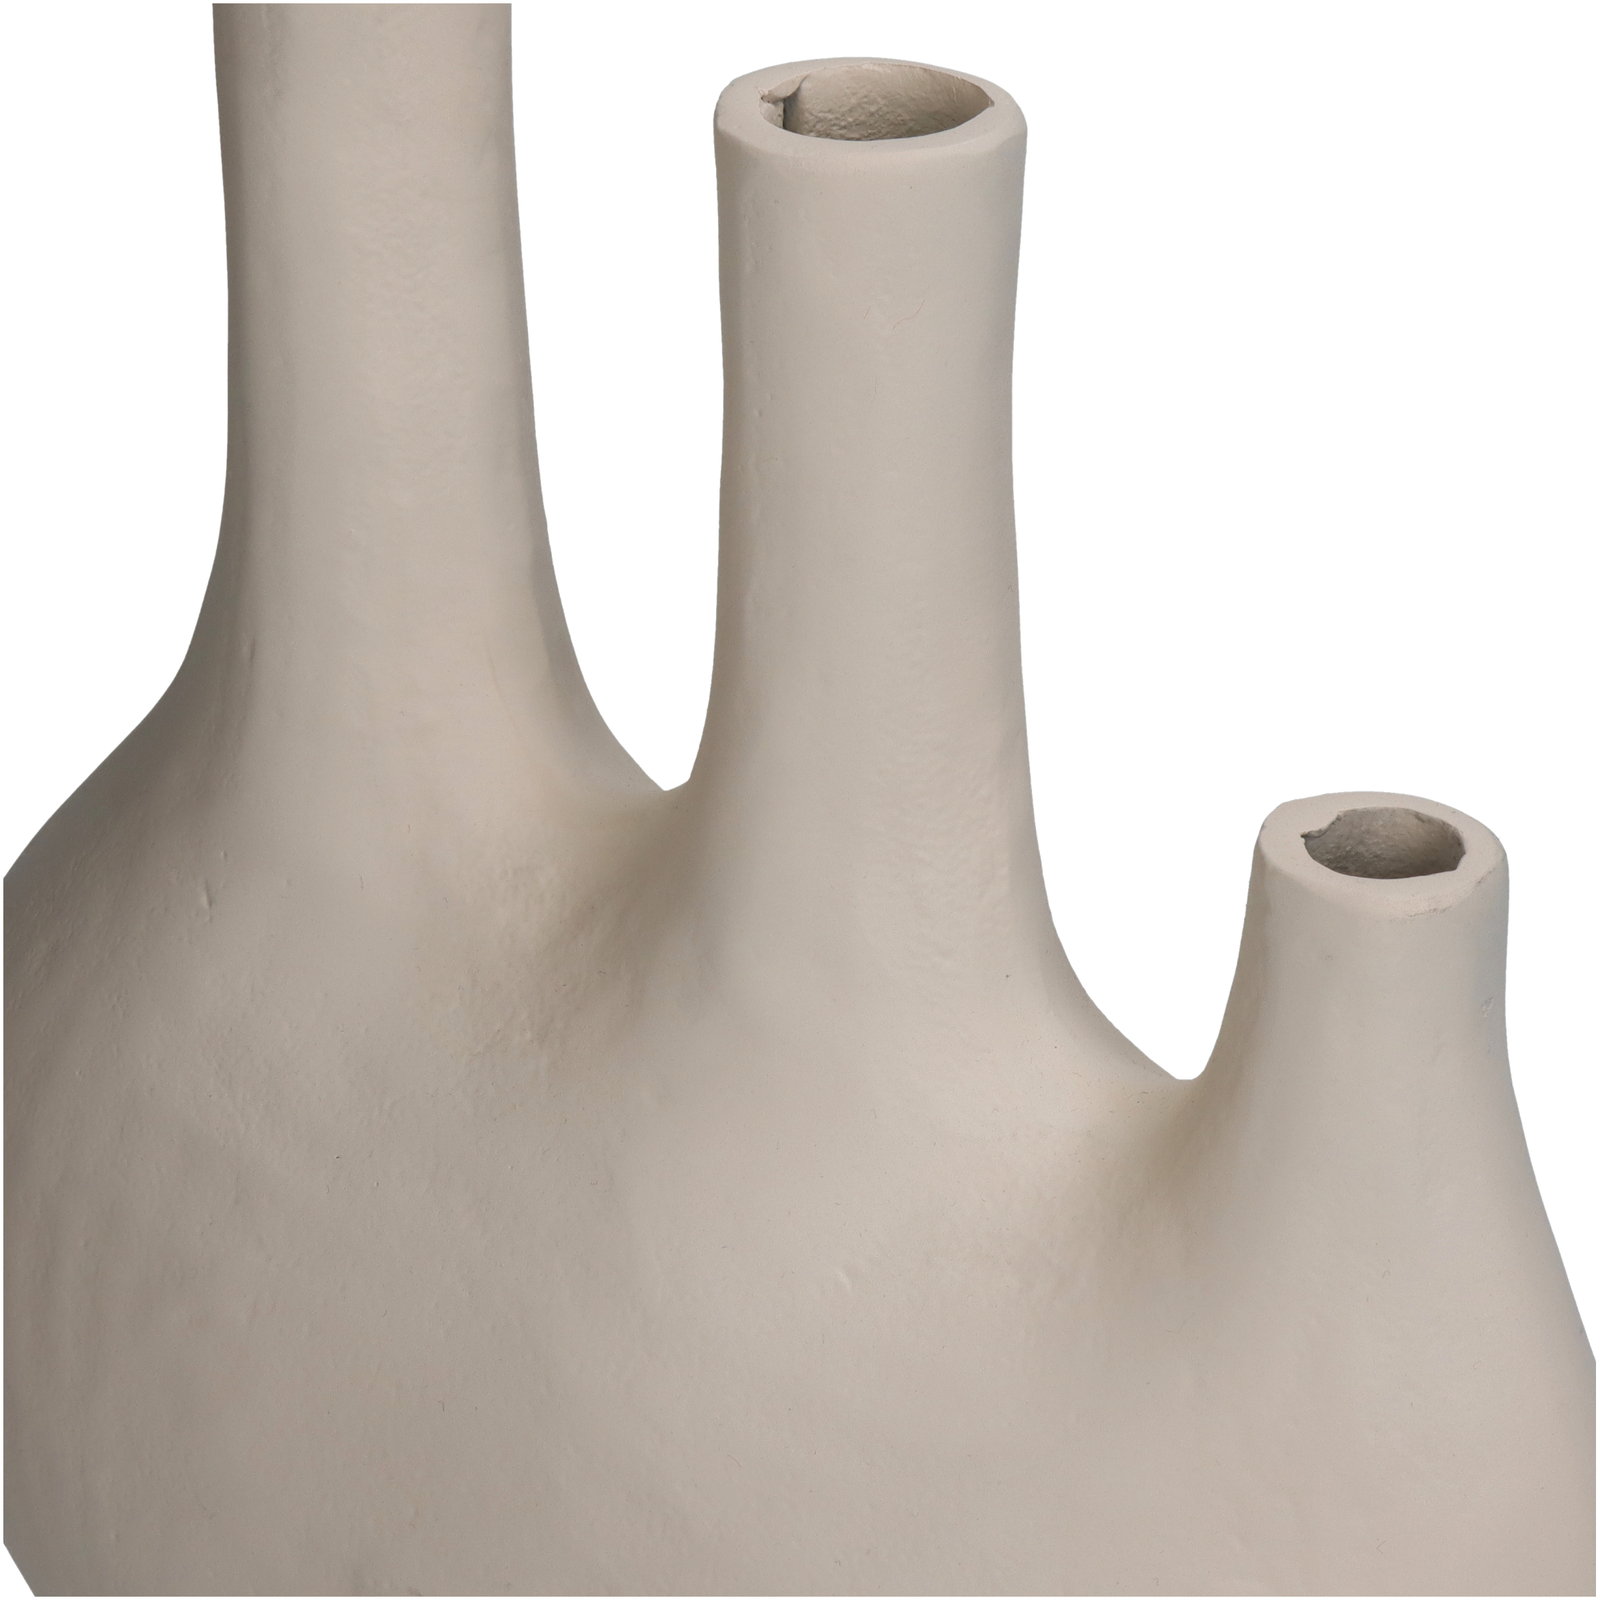 Vase Aluminium Ivory 25x12.5x37cm